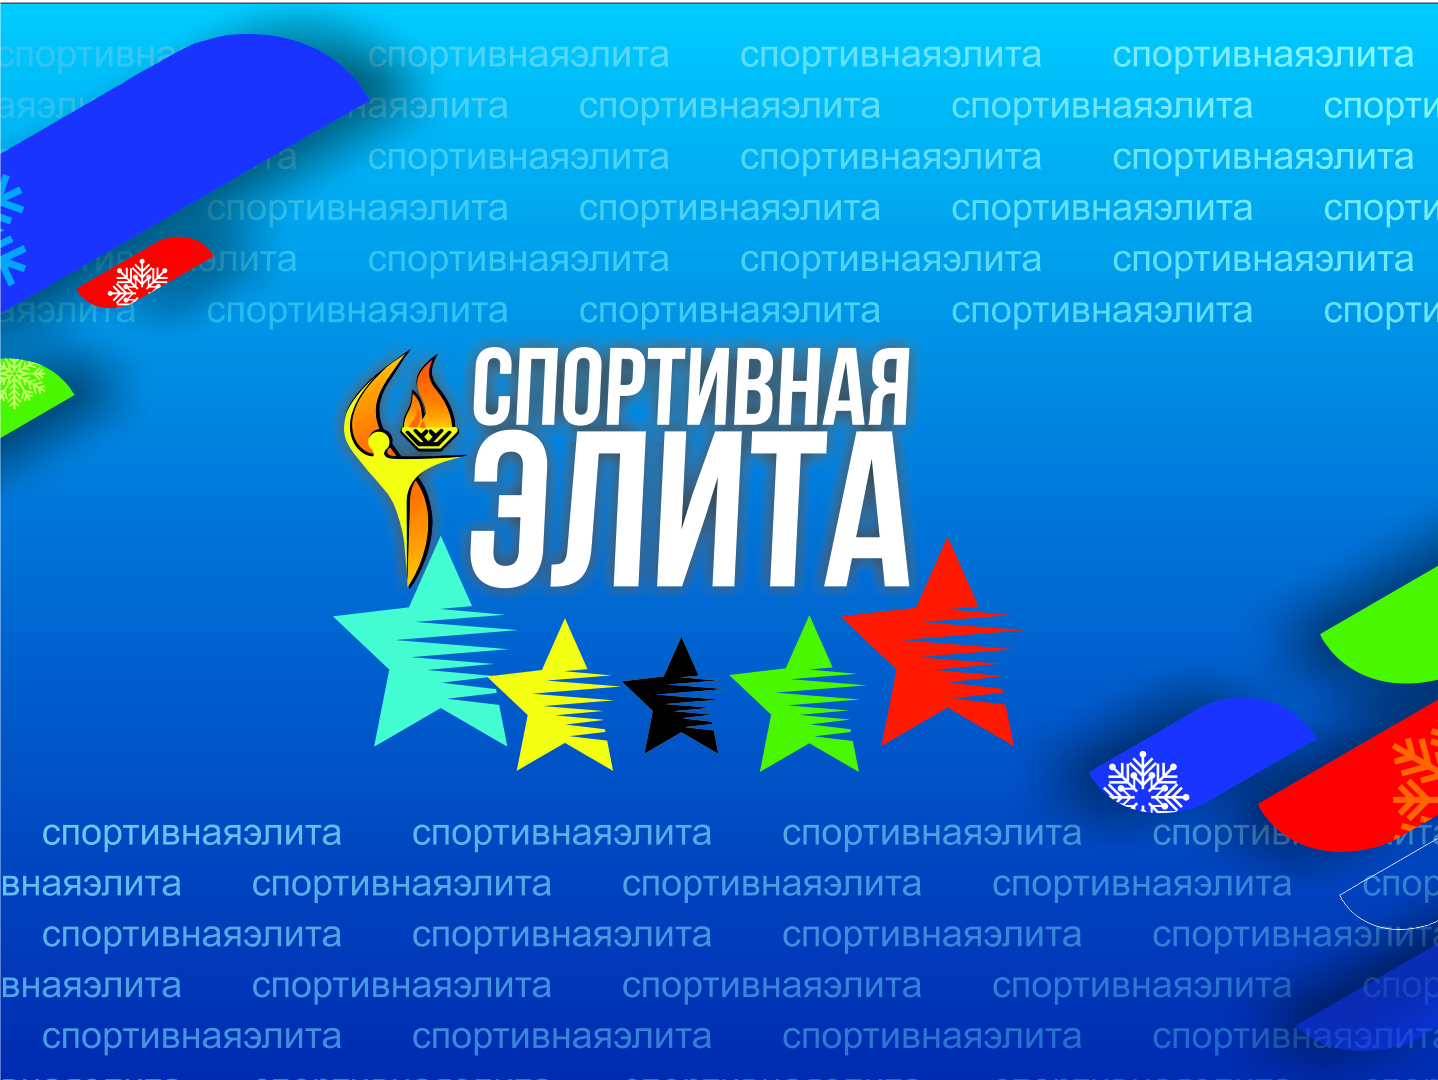 В Сургутском районе стартовал ежегодный конкурс «Спортивная элита - 2020»